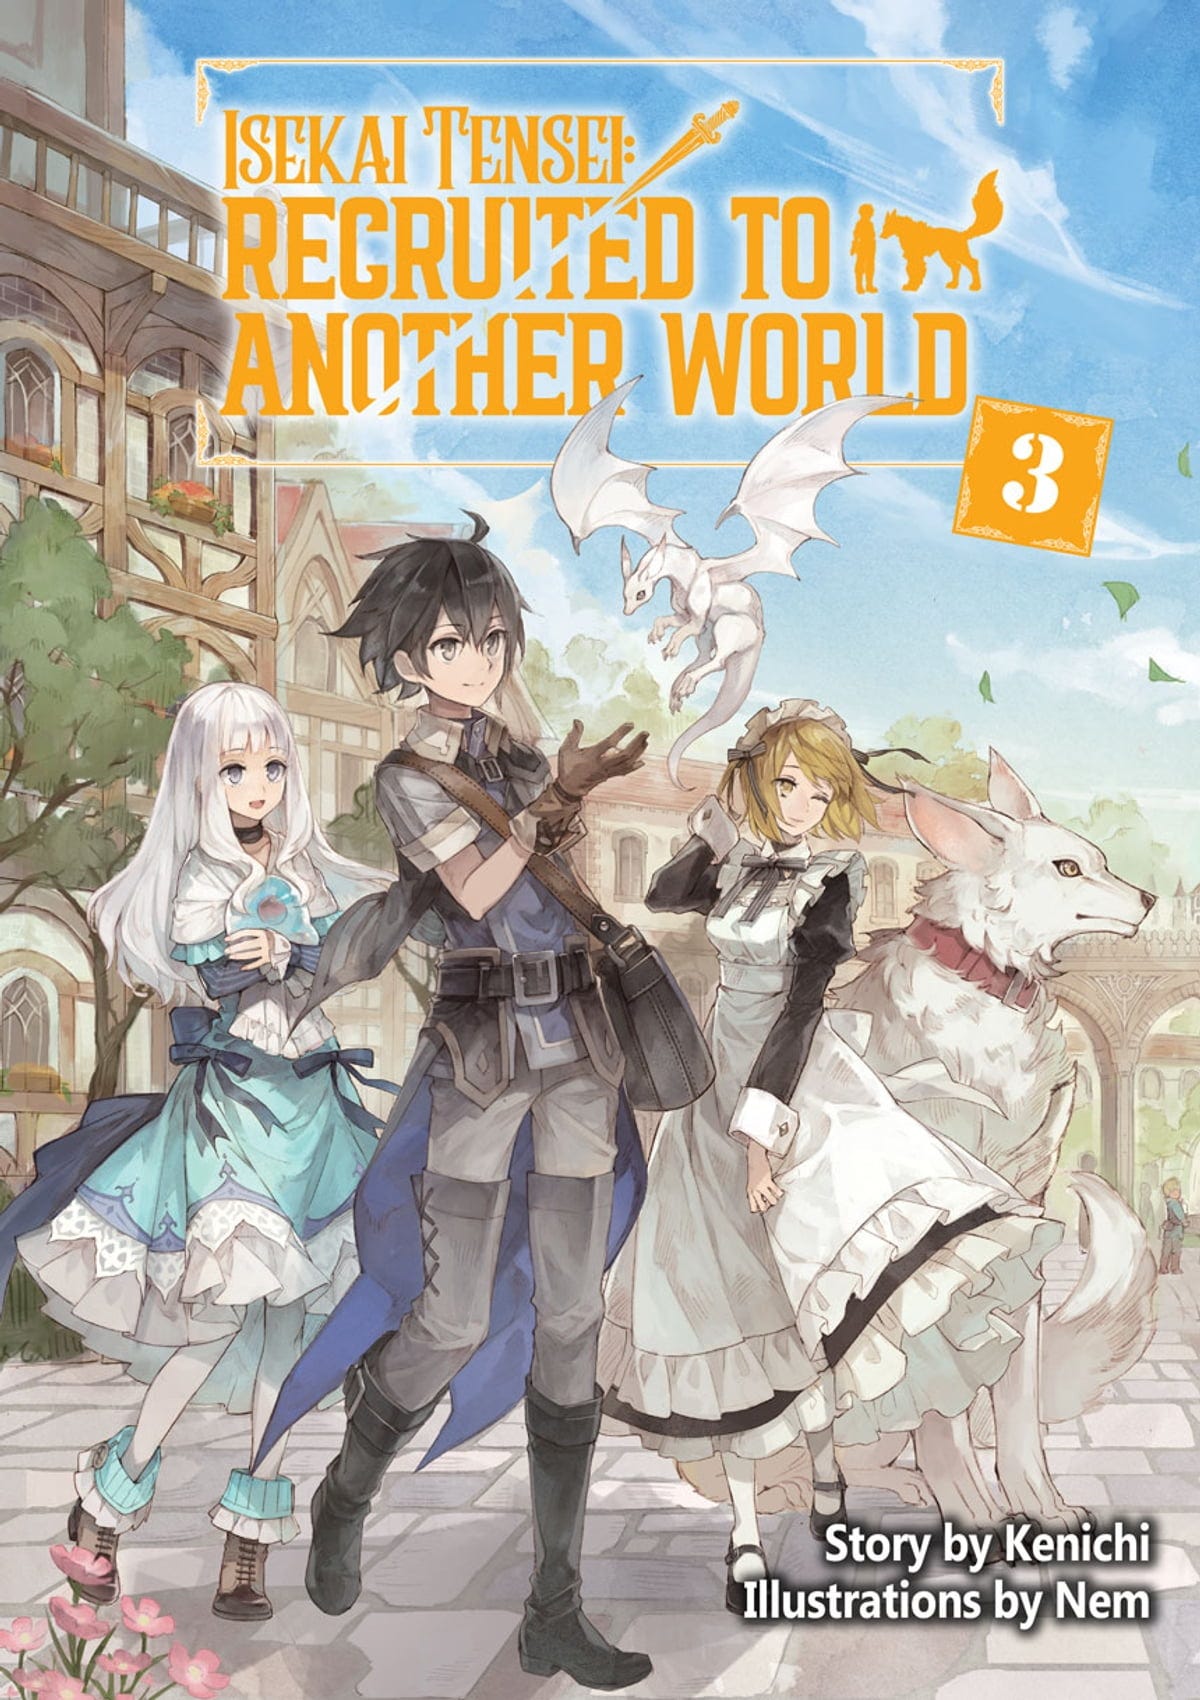 Isekai Tensei: Recruited to Another World Volume 3 Manga eBook by Kenichi -  EPUB Book | Rakuten Kobo 9781718318168